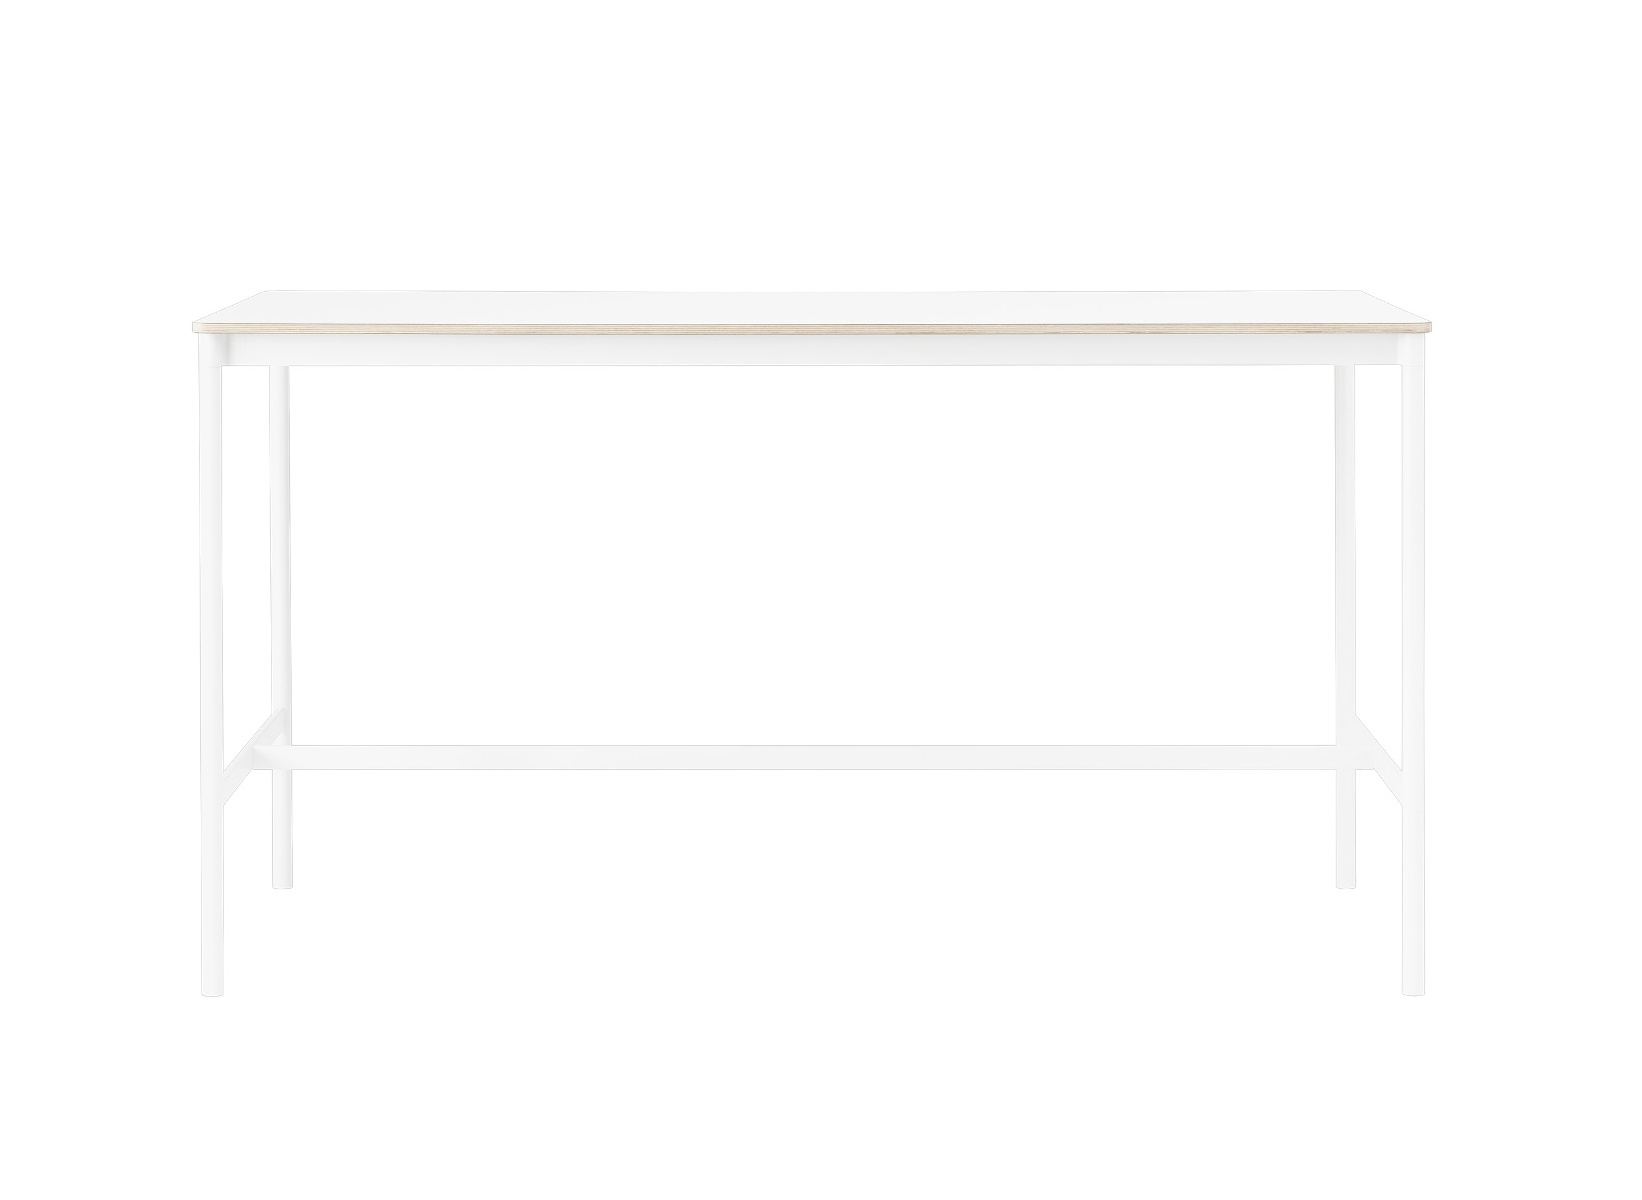 Base Stehtisch, 190 x 85 cm, höhe 105cm, weiß laminat / weiß